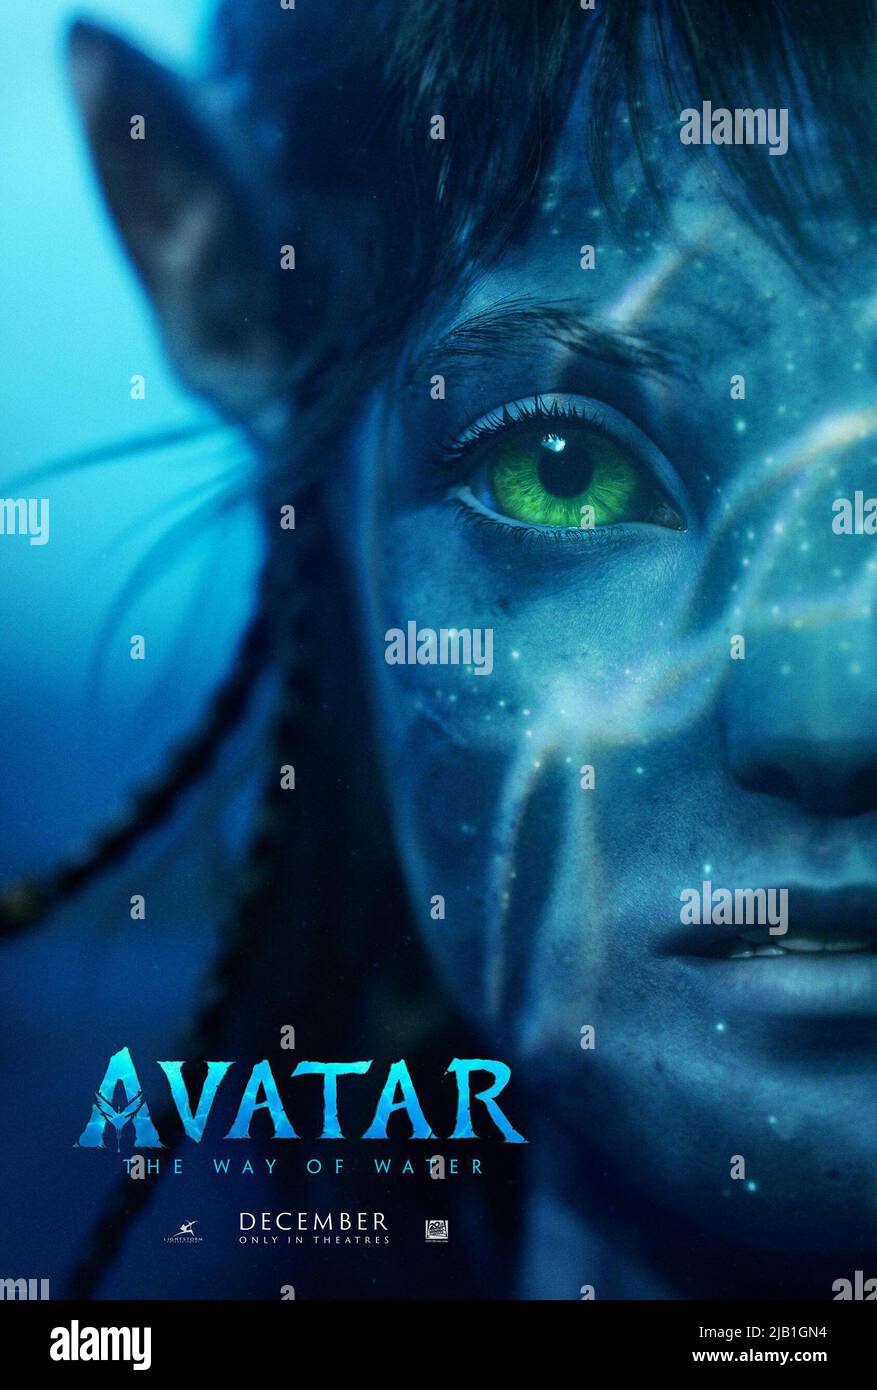 ดูหนังออนไลน์HD Avatar 2 The Way of Water (2022) อวตาร 2 วิถีแห่งสายน้ำ หนังเต็มเรื่อง หนังมาสเตอร์ ดูหนังHD ดูหนังออนไลน์ ดูหนังใหม่